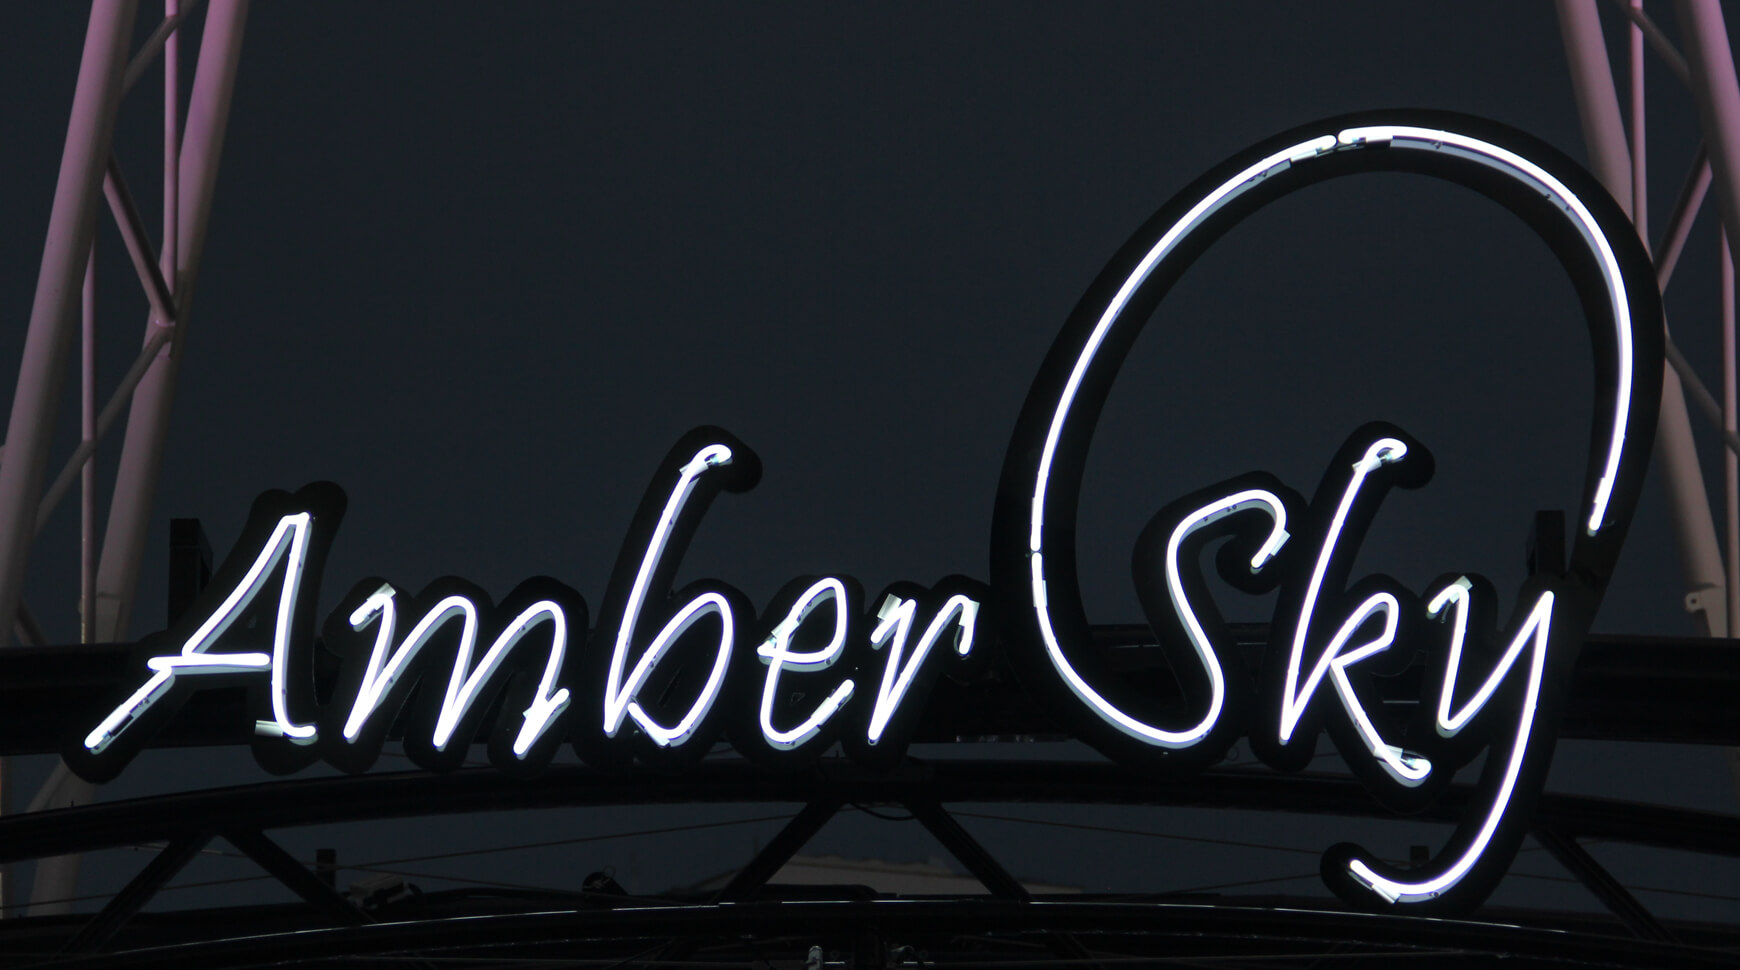 Cielo ámbar - Amber Sky - cartel de neón blanco con el nombre de la empresa colocado en el estante